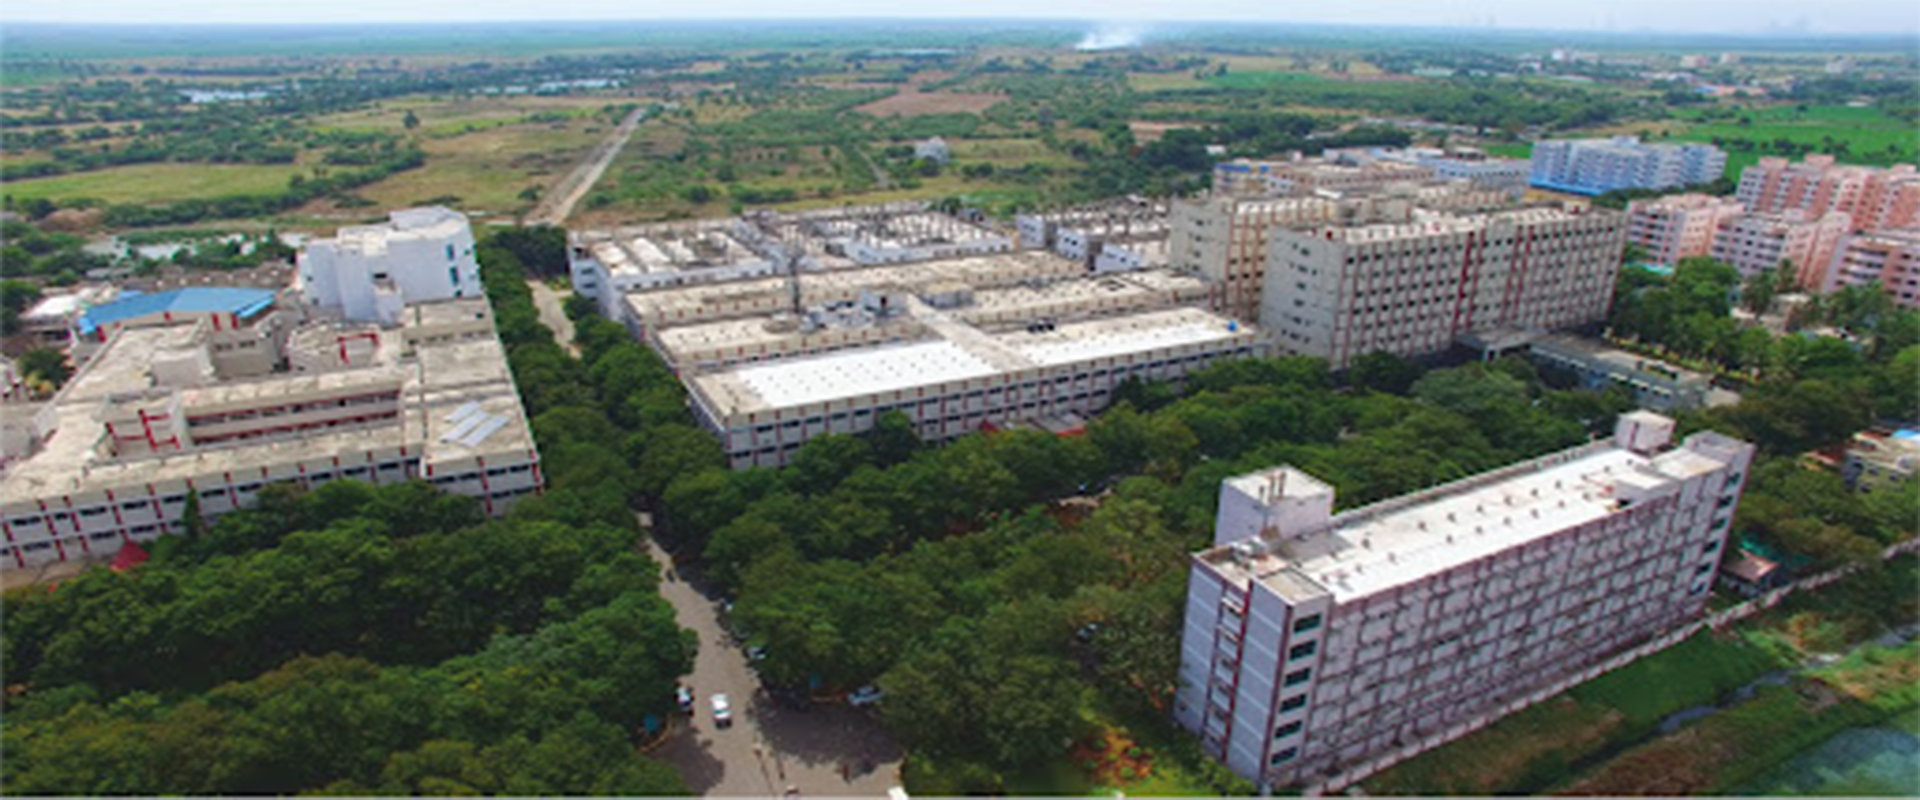 Narayana Medical College Nellore